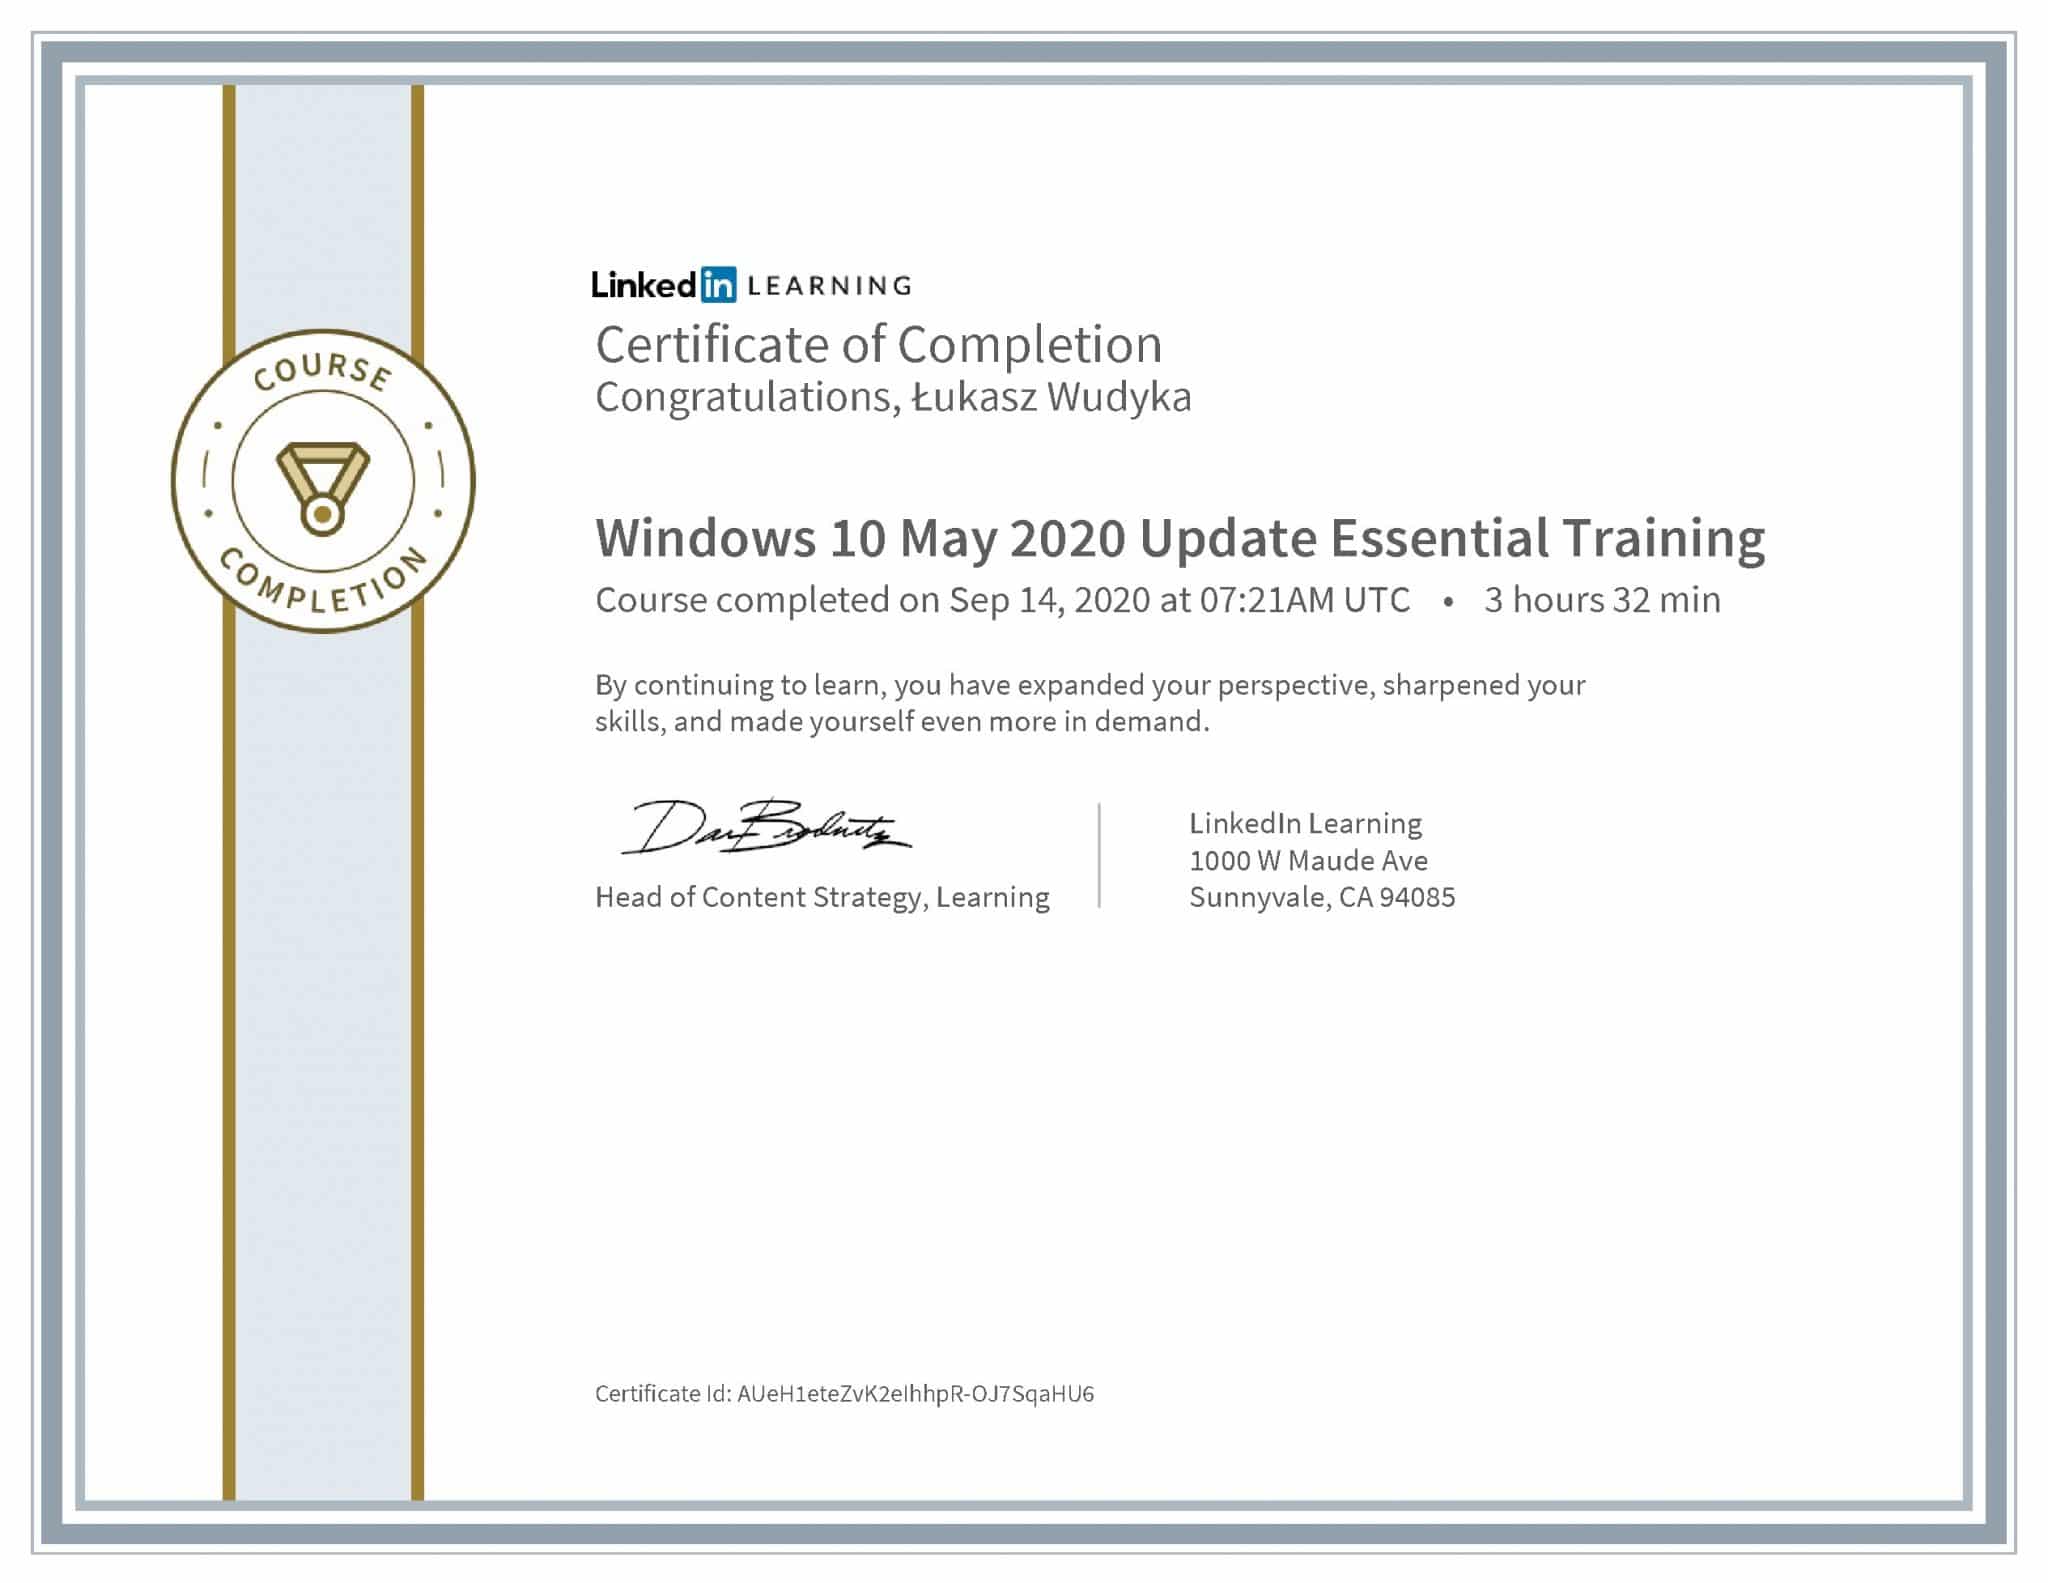 Łukasz Wudyka certyfikat LinkedIn Windows 10 May 2020 Update Essential Training